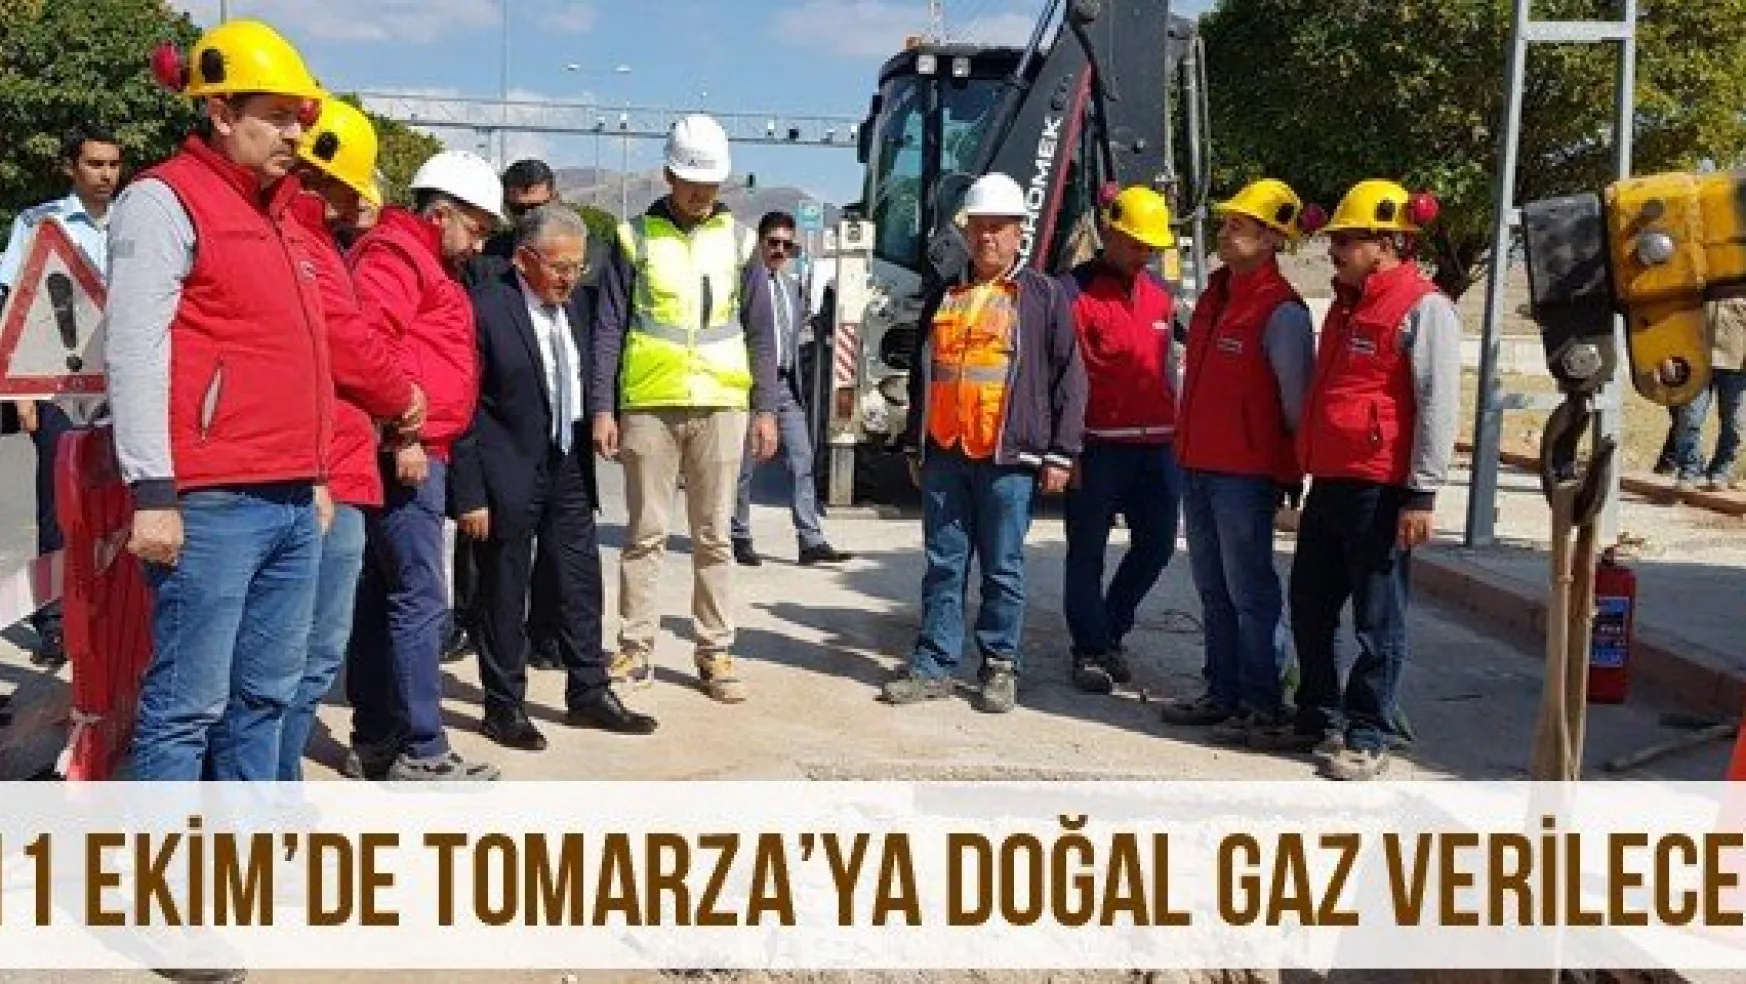 11 Ekim'de Tomarza'ya doğal gaz verilecek